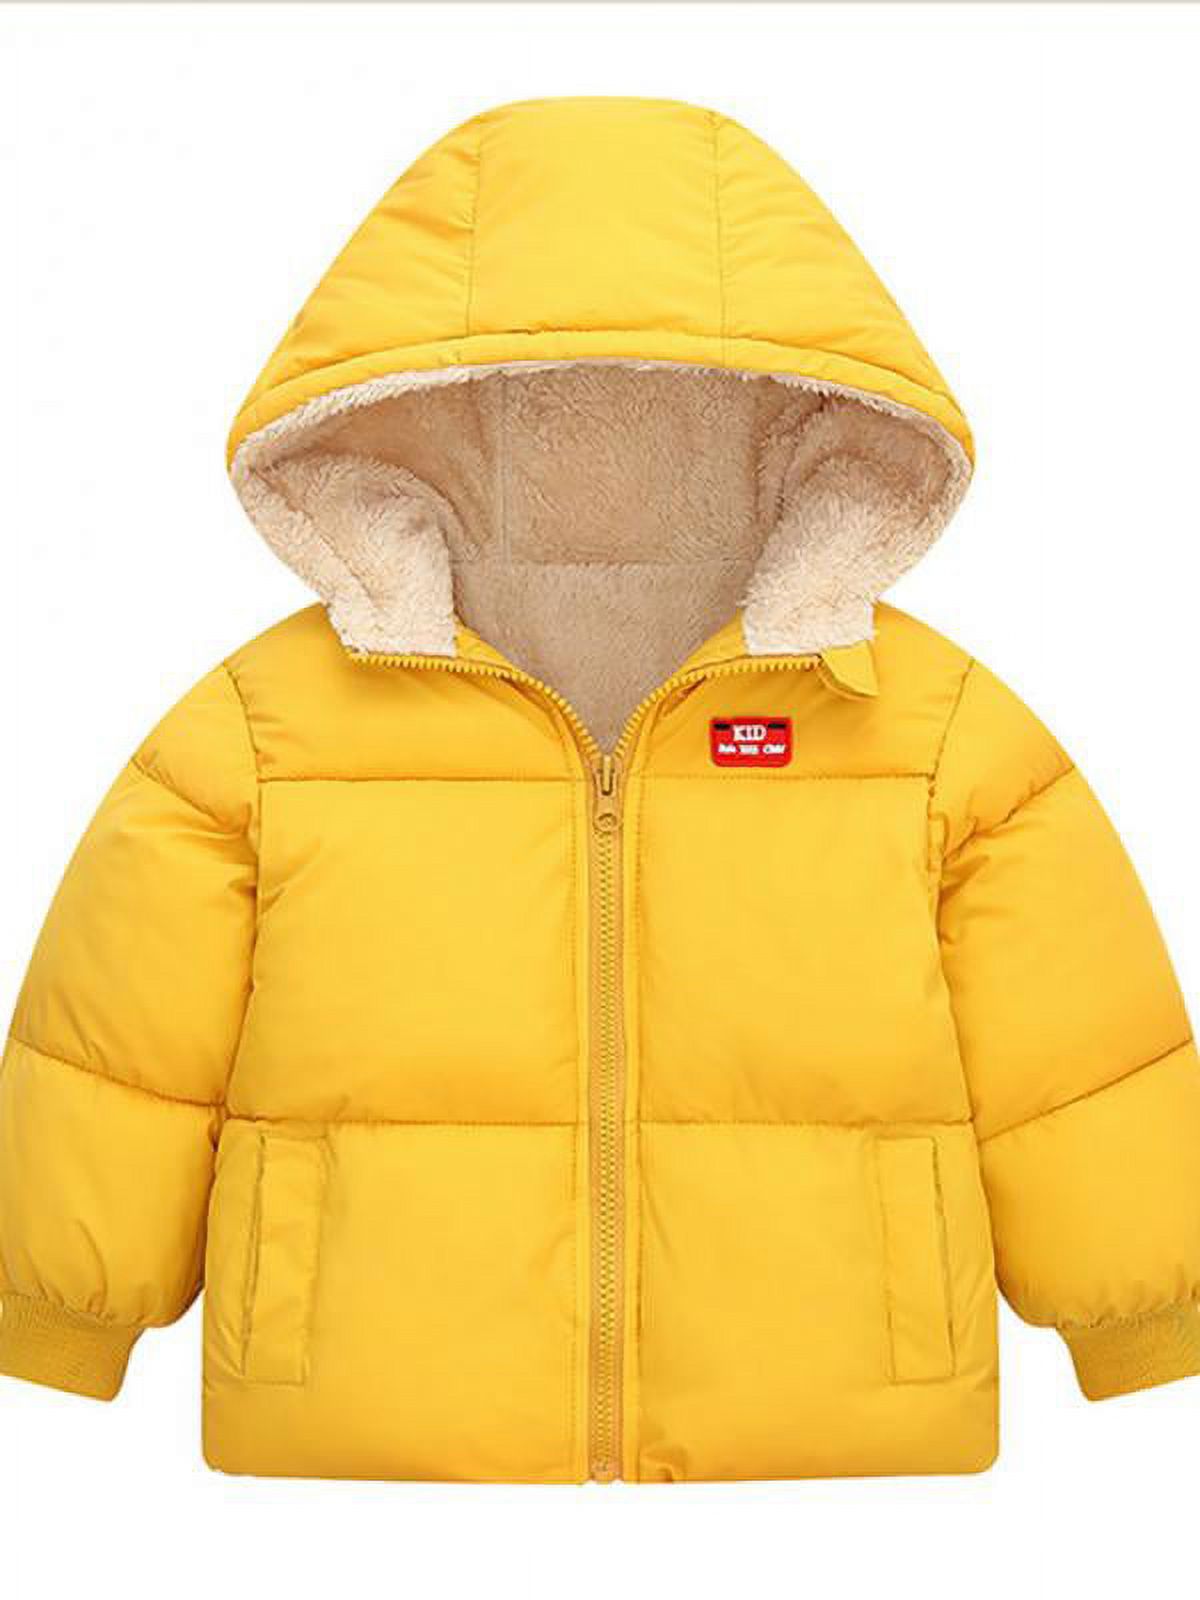 Topumt Boys Girls Hooded Down Jacket Winter Warm Fleece Coat Windproof Zipper Puffer Outerwear 1-6T - image 1 of 1